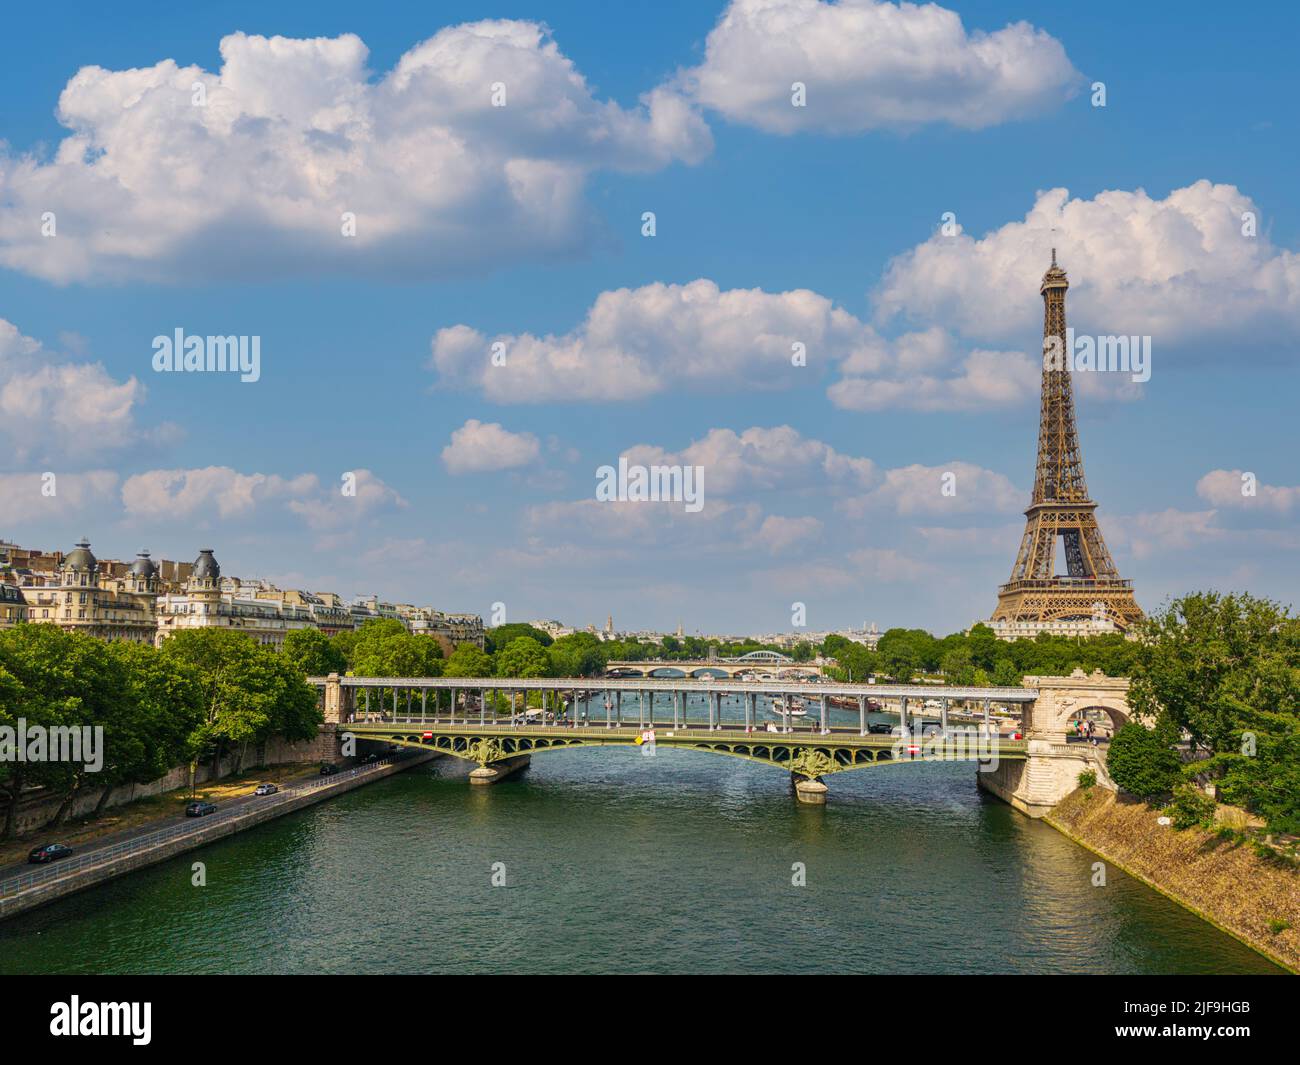 Eiffelturm oder Tour Eiffel in einer Luftaufnahme in Paris, Frankreich Stockfoto